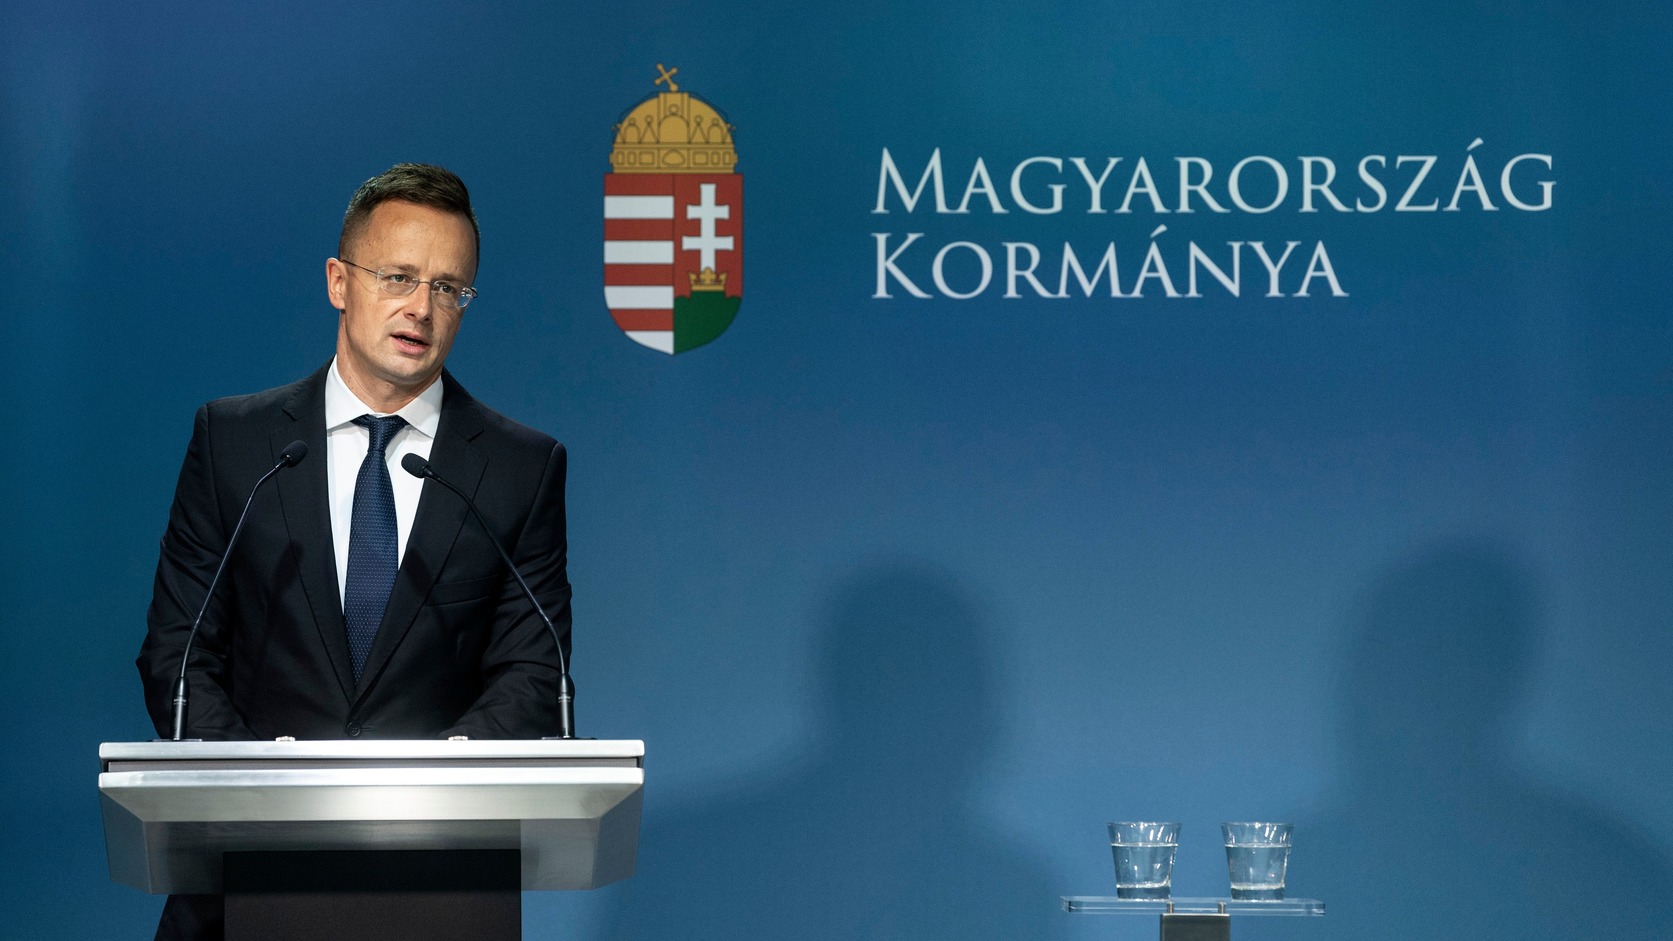 Про це міністр закордонних справ Угорщини заявив у середу на прес-конференції, що відбулась після голосування за пропозиції доповідача з цього питання депутатки від Данії Юдіт Саргентіні.